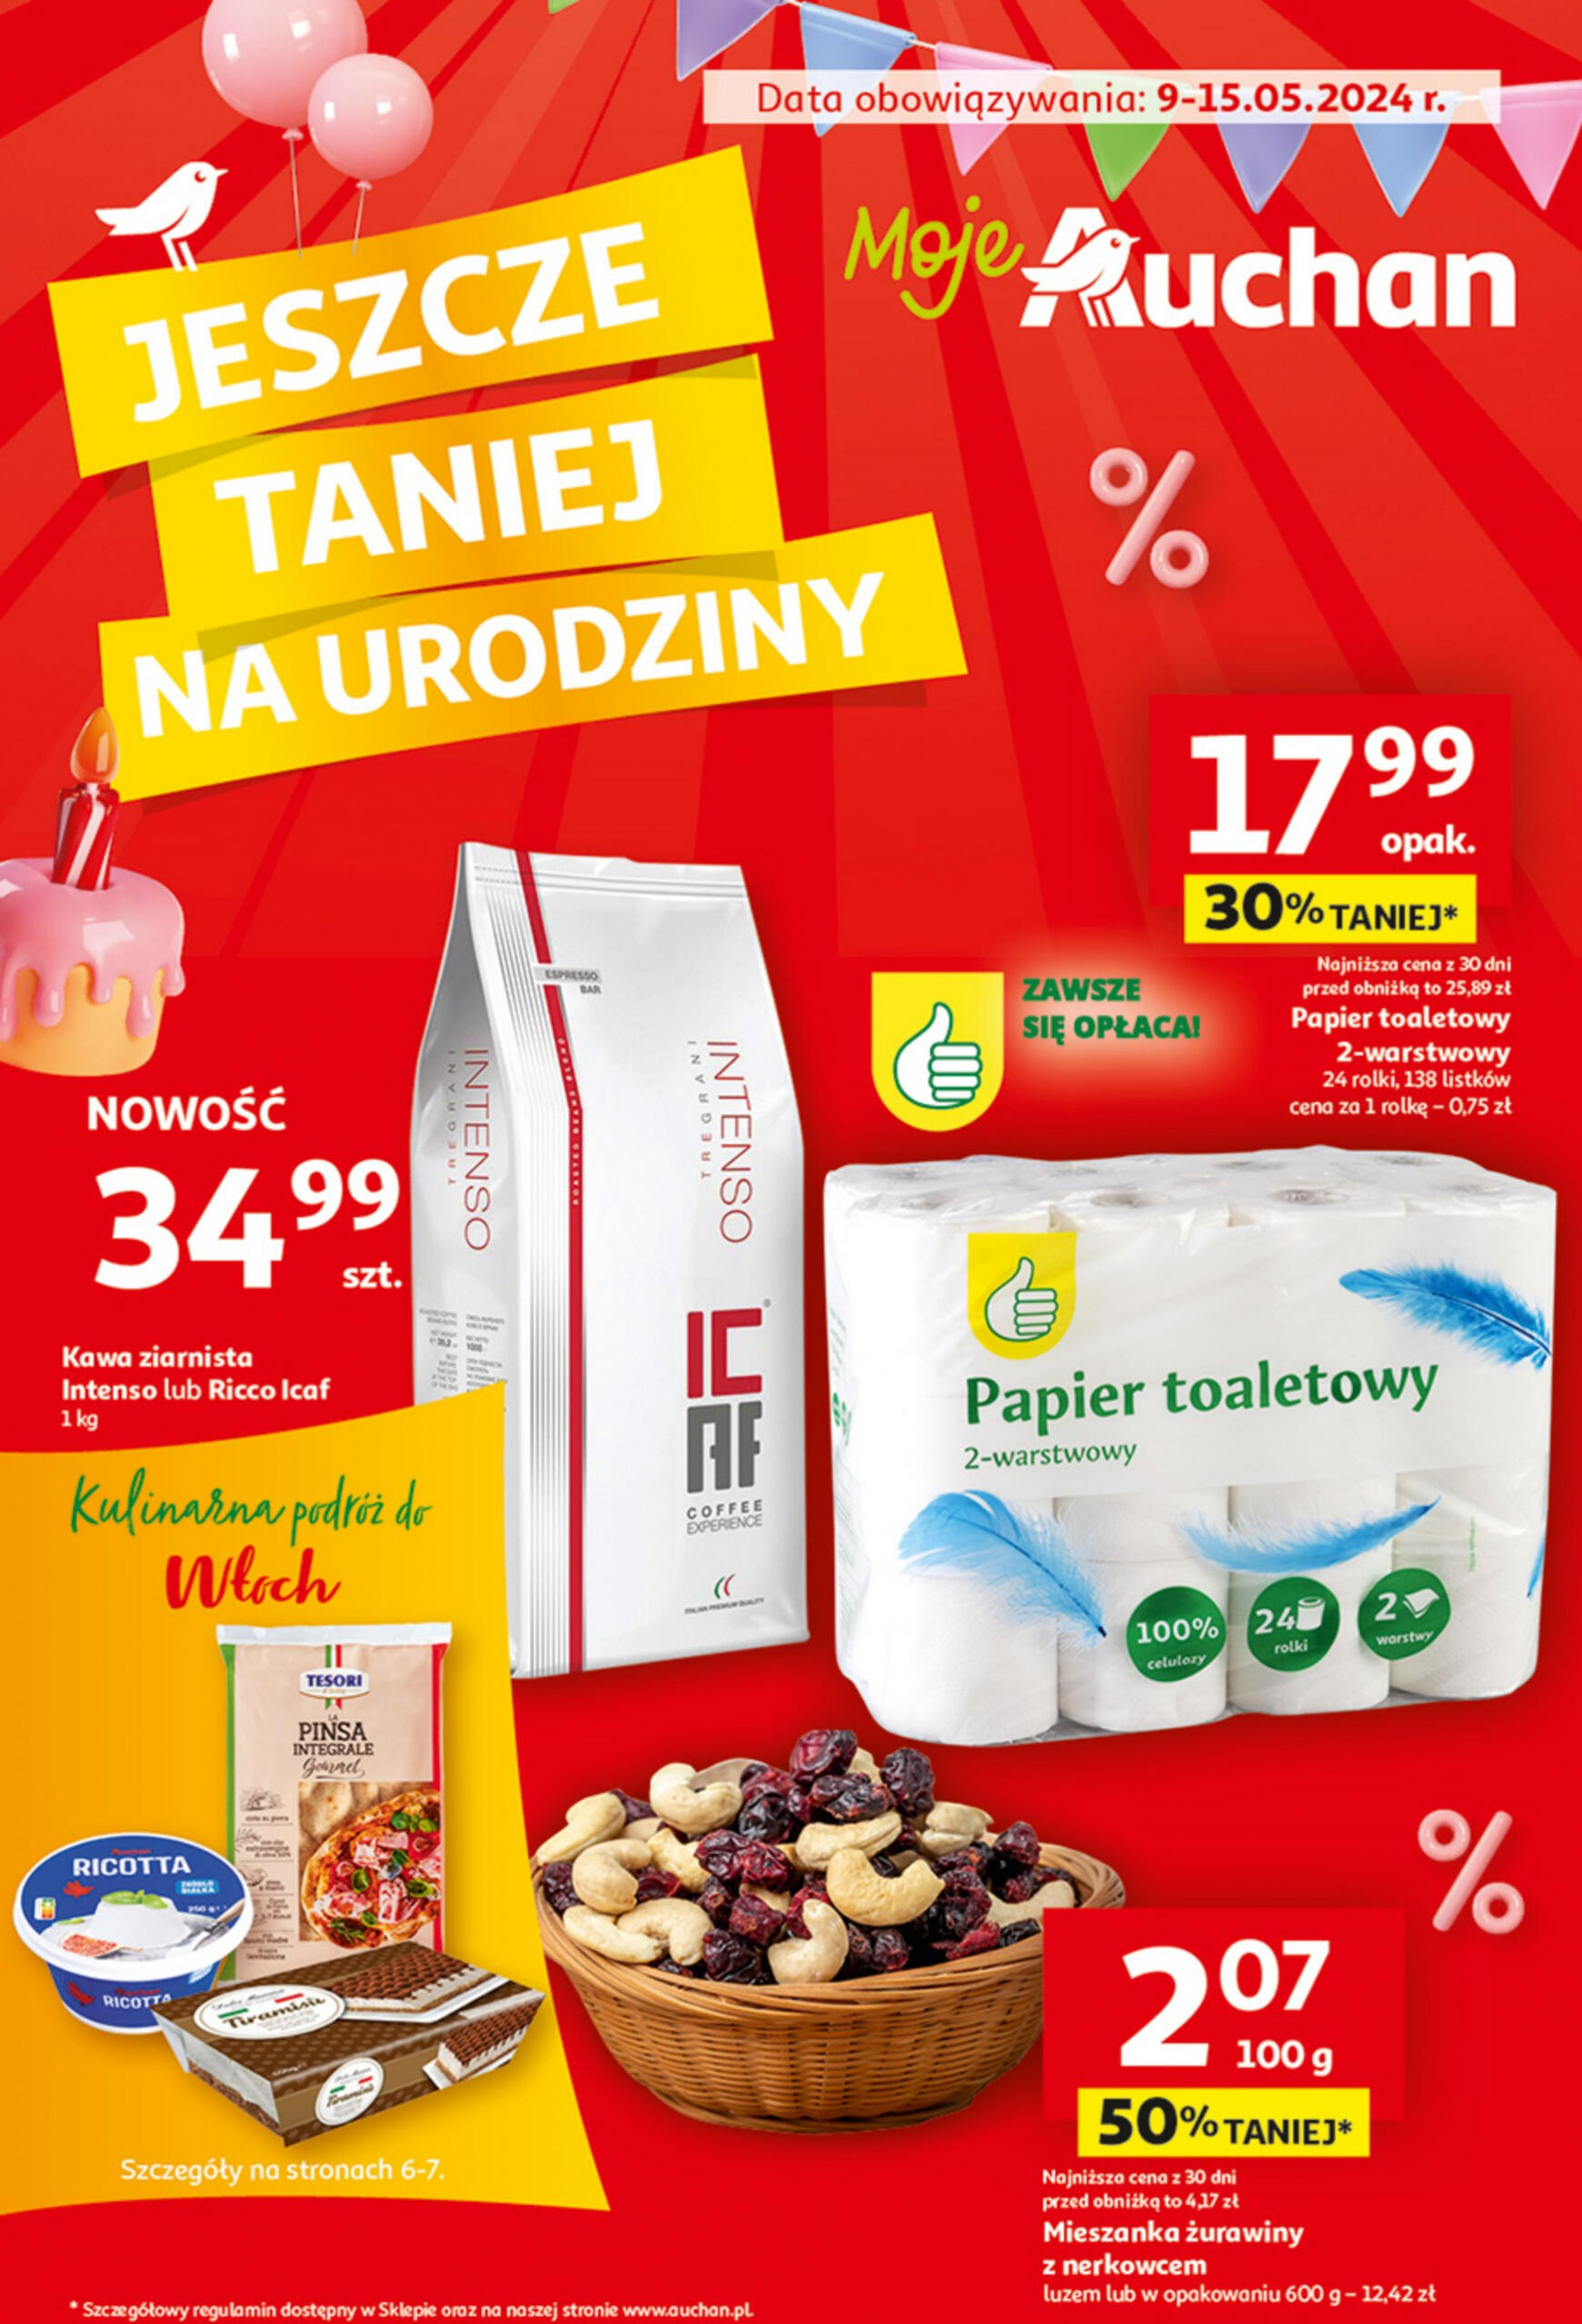 auchan - Moje Auchan - Gazetka Jeszcze taniej na urodziny gazetka aktualna ważna od 09.05. - 15.05.